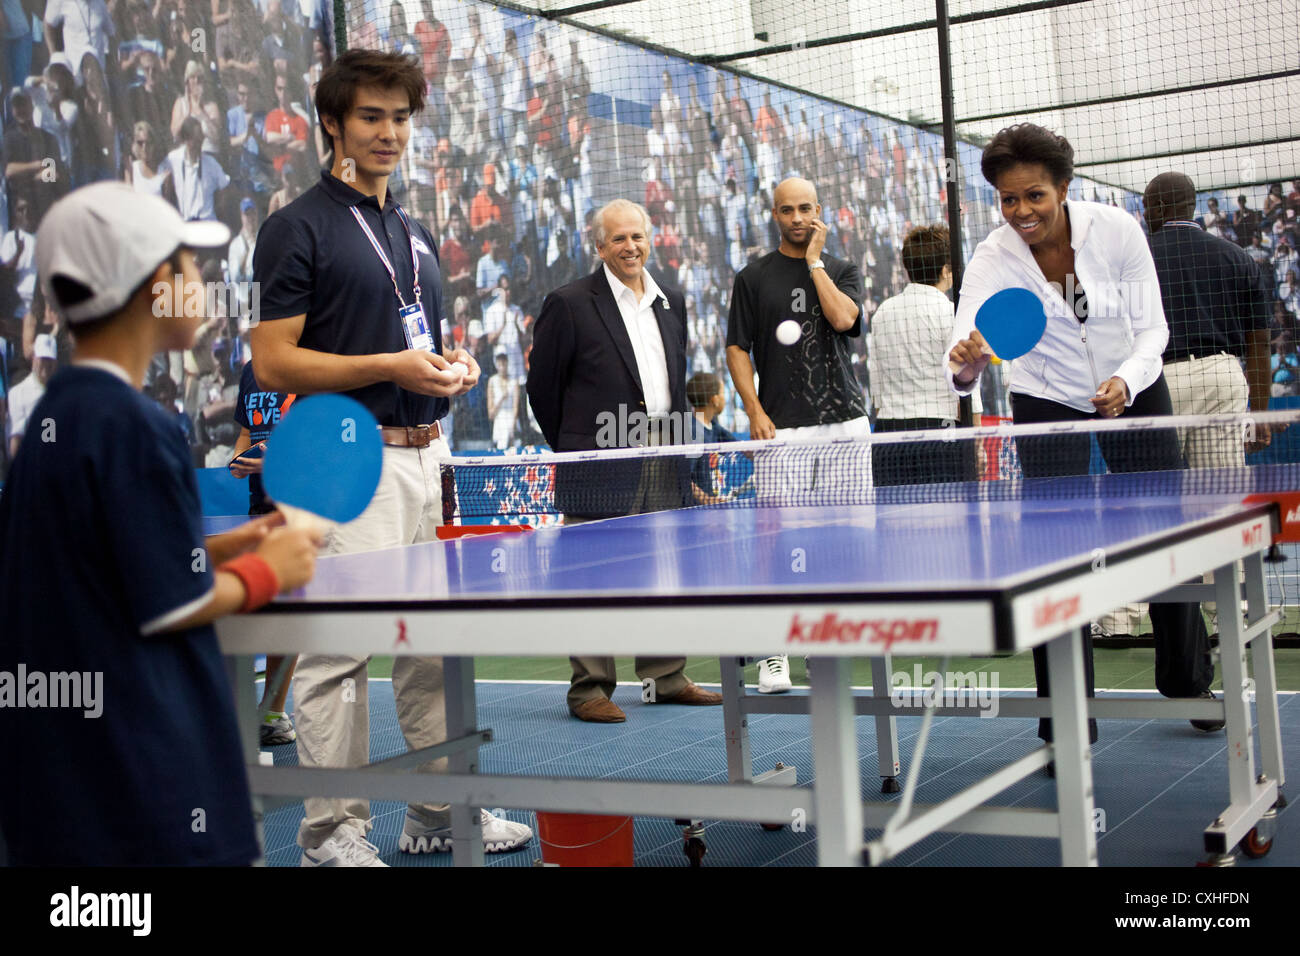 First Lady Michelle Obama spielt Tischtennis während einer Veranstaltung gehen wir September 2011 im USTA Billie Jean King National Tennis Center in New York. Stockfoto